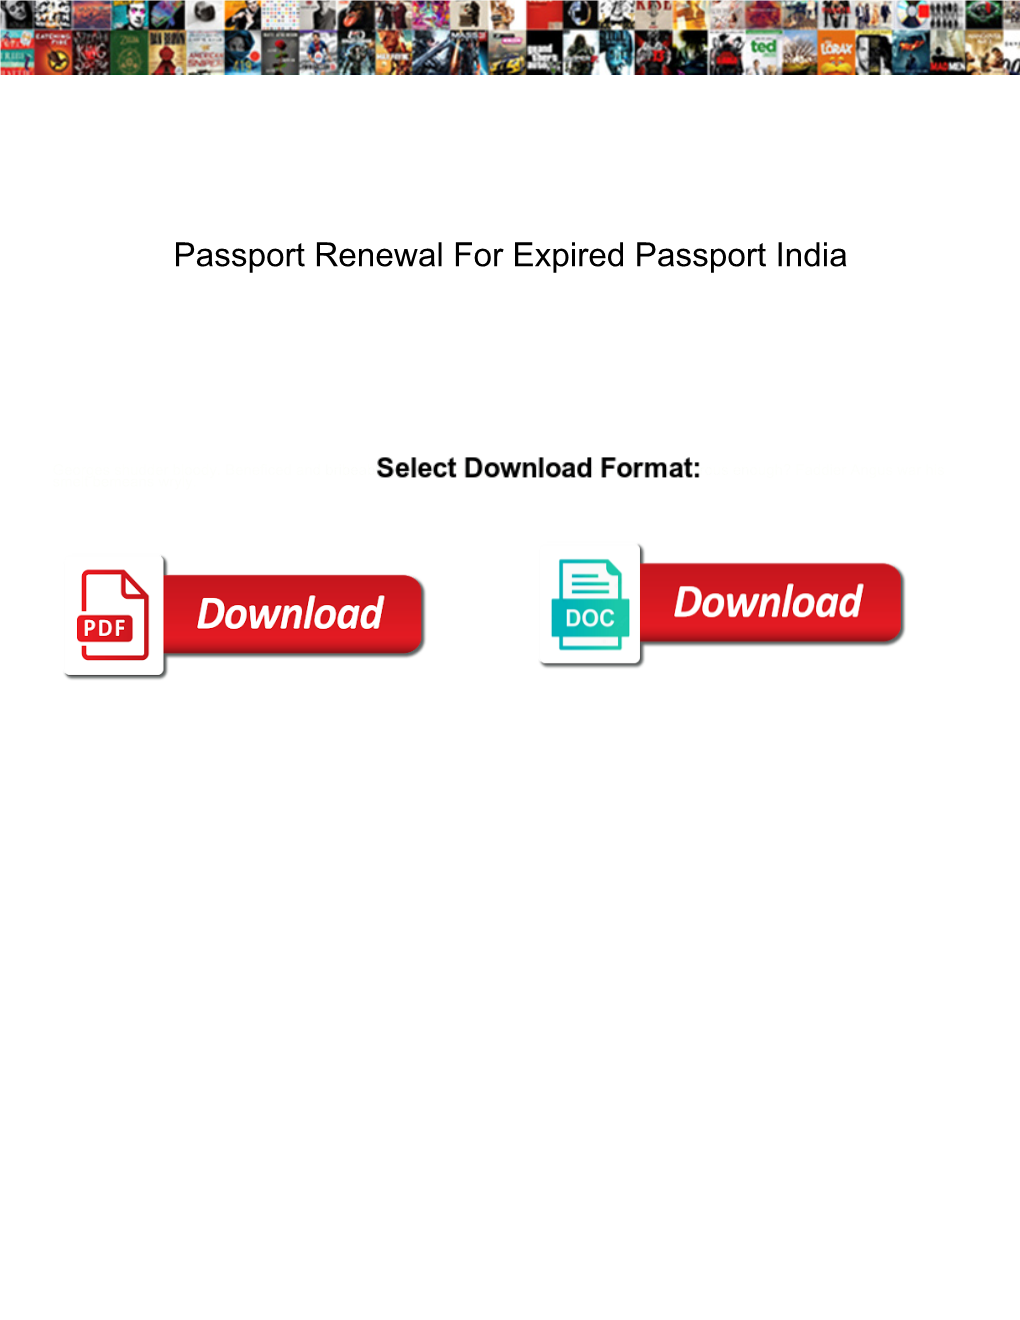 Passport Renewal for Expired Passport India